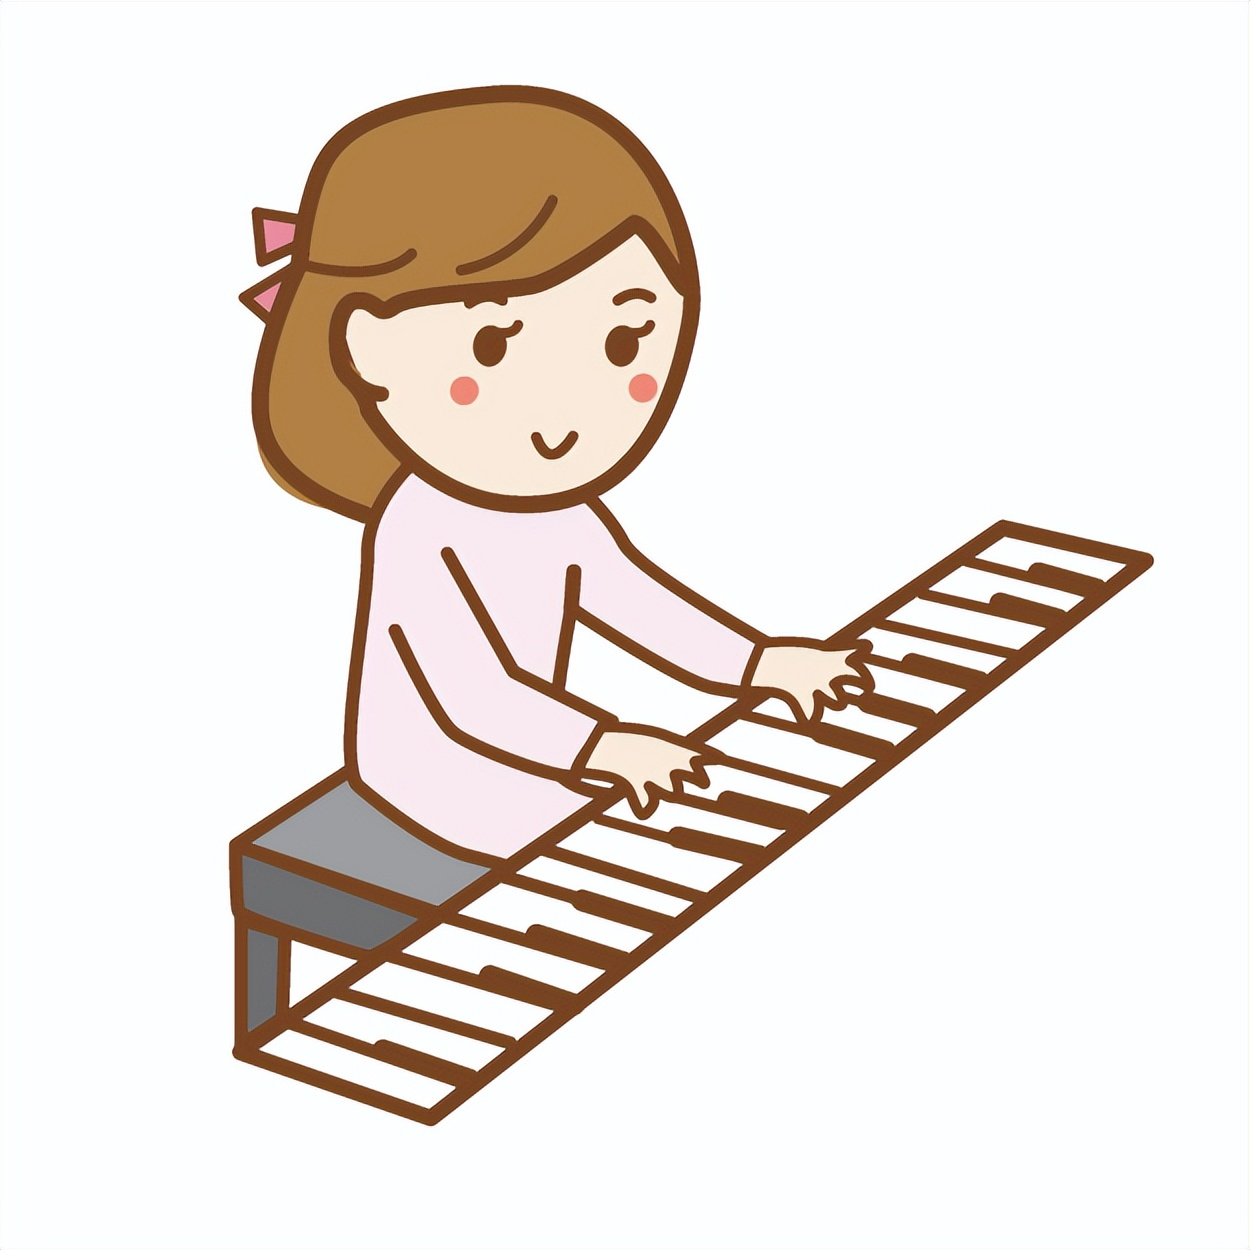 大家为什么都开始学钢琴了?学钢琴能为孩子带来哪些成长?